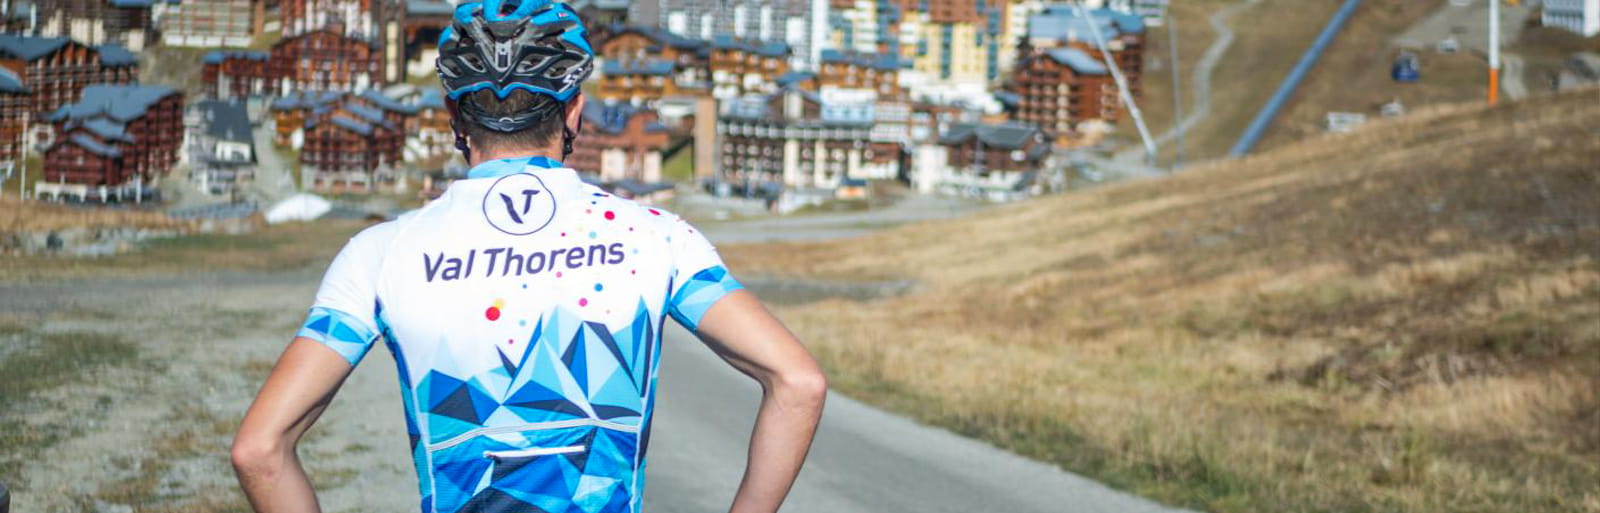 Radsportprogramm für den Sommer 2021 in Savoie